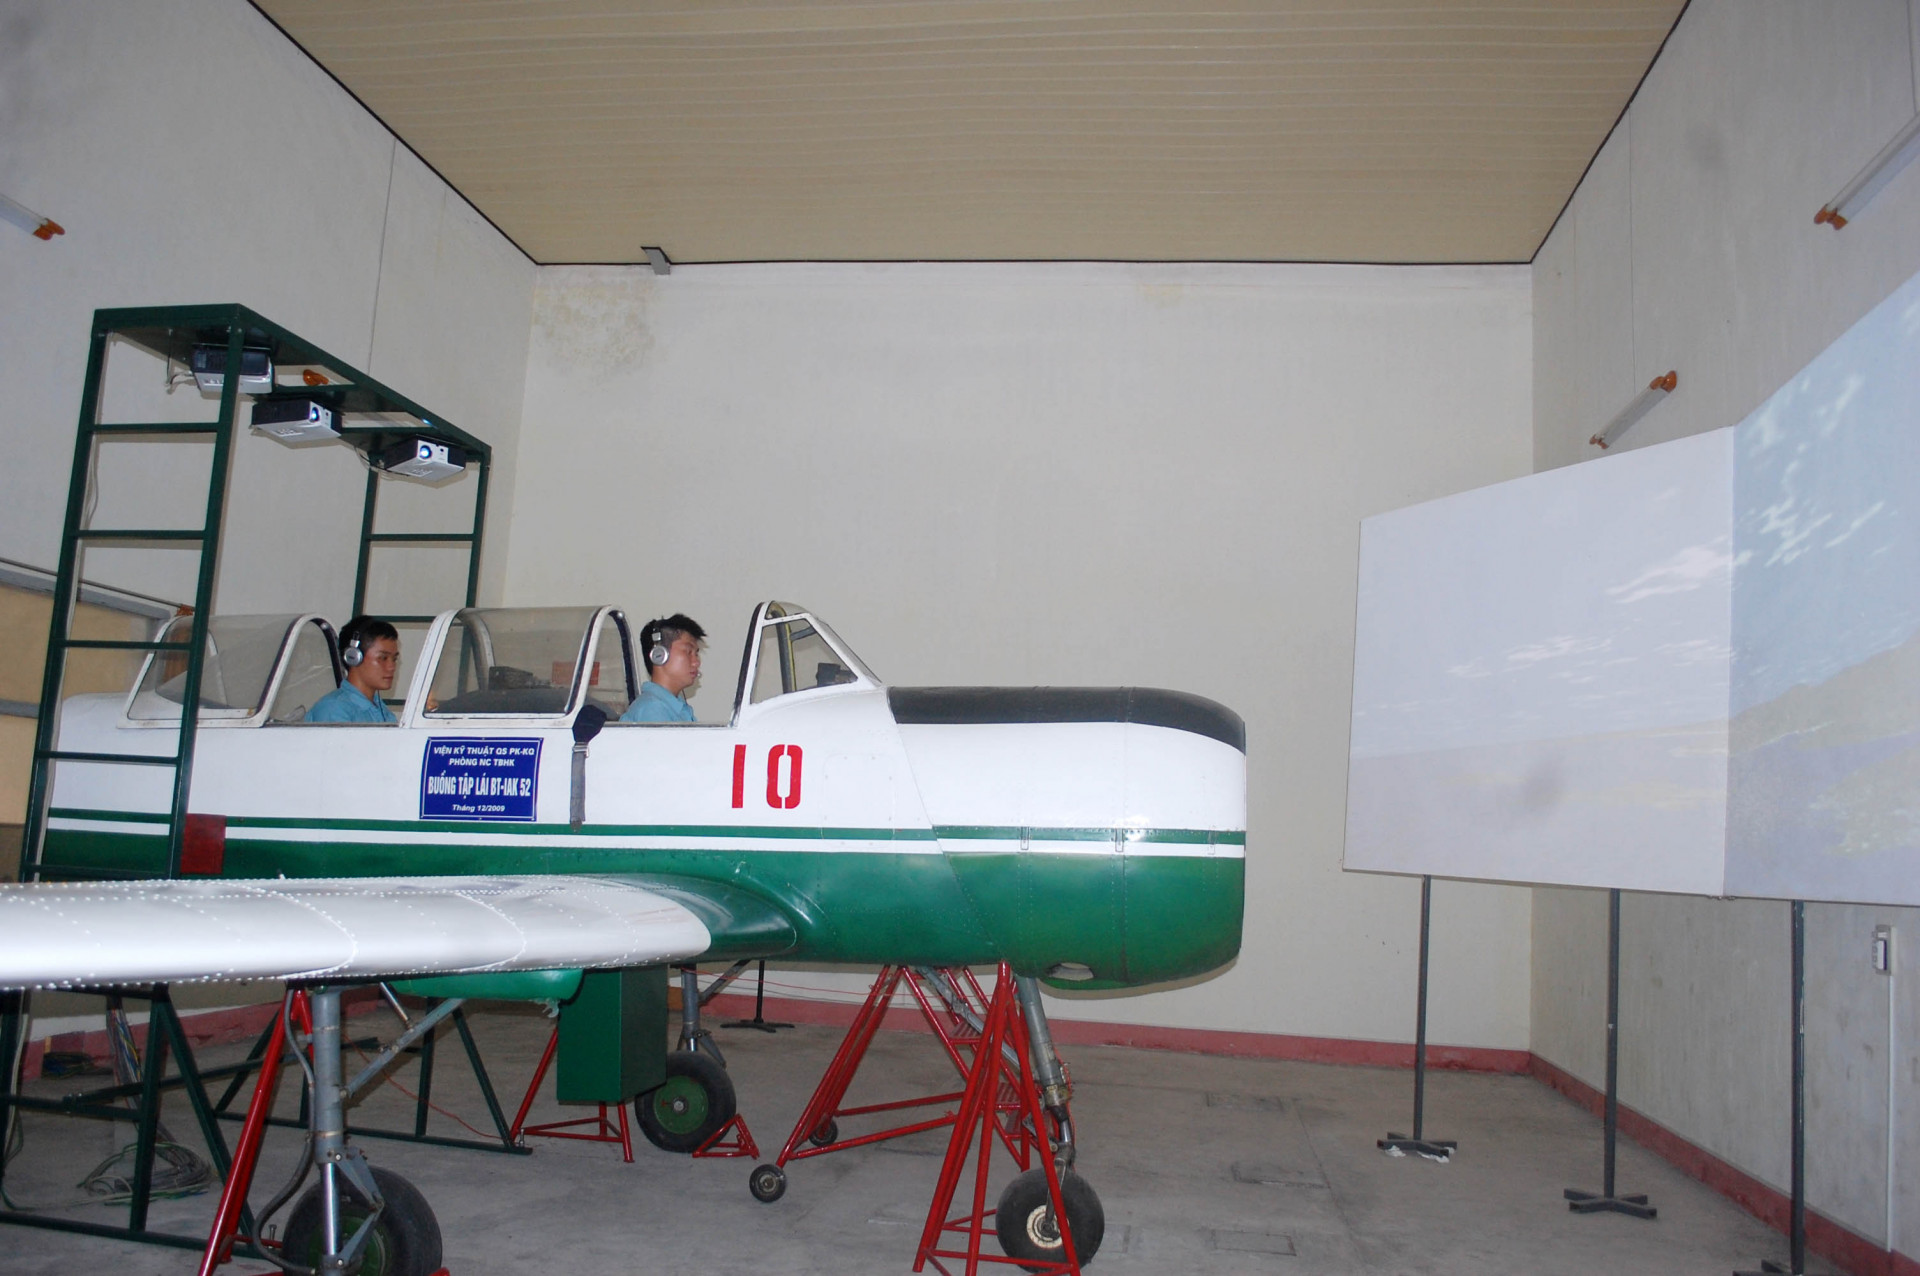 Mô hình huấn luyện máy bay Iak - 52 giành cho học viên trước khi bay thật.